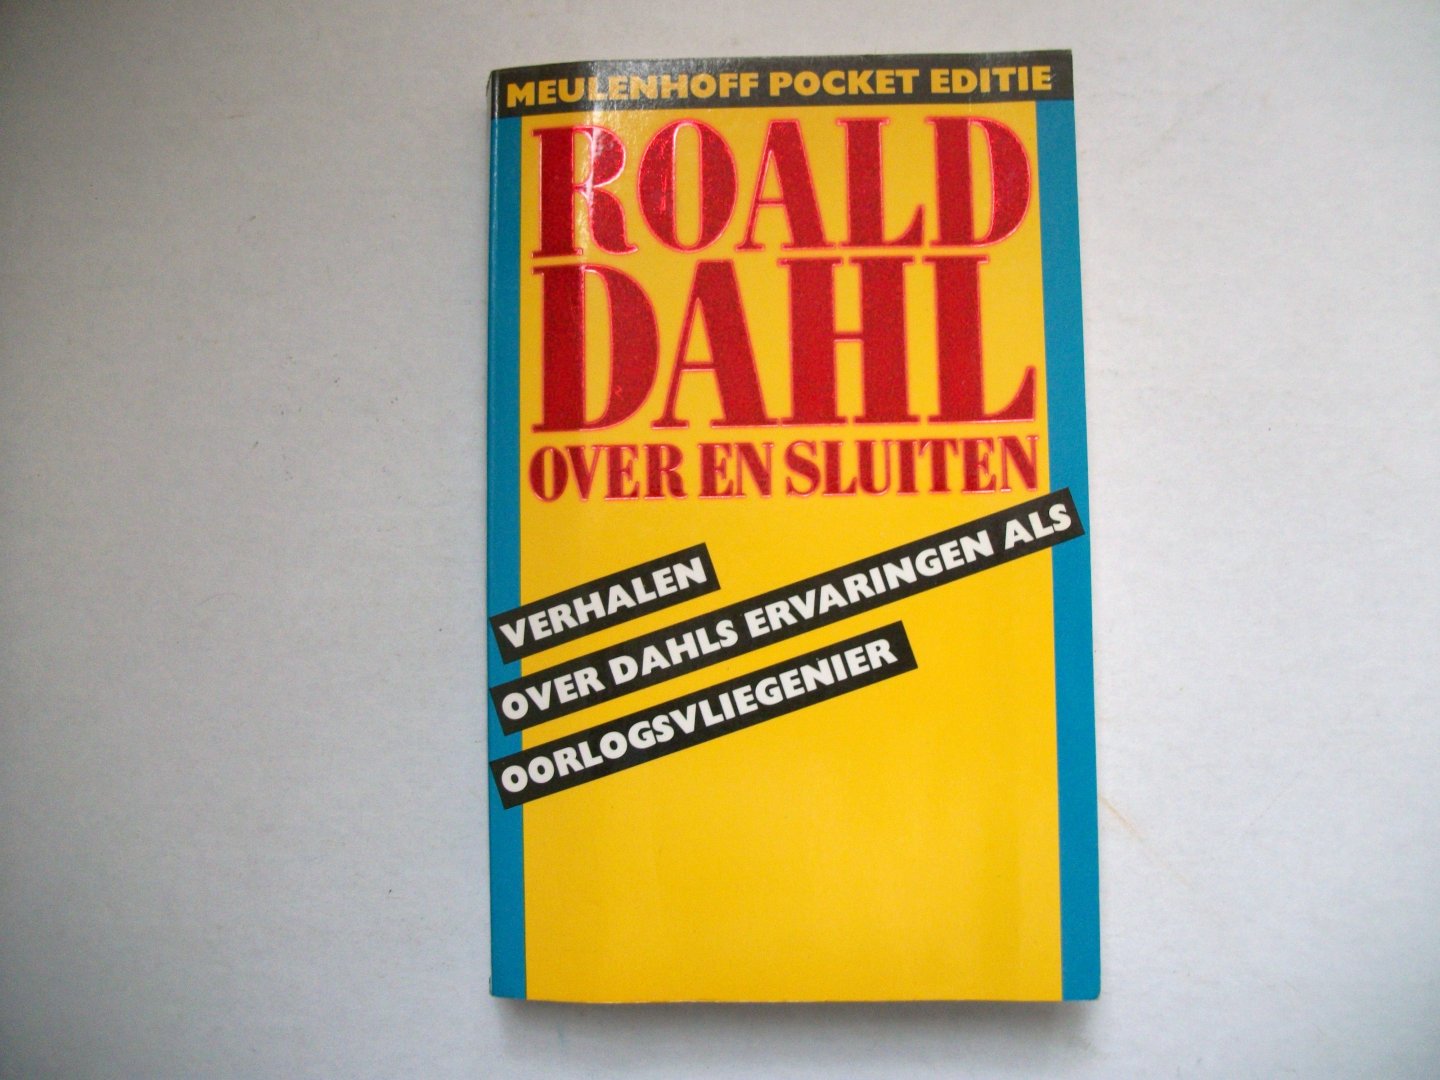 Dahl, Ronald - Over en sluiten, verhalen over Dahls ervaringen als oorlogsvlieger